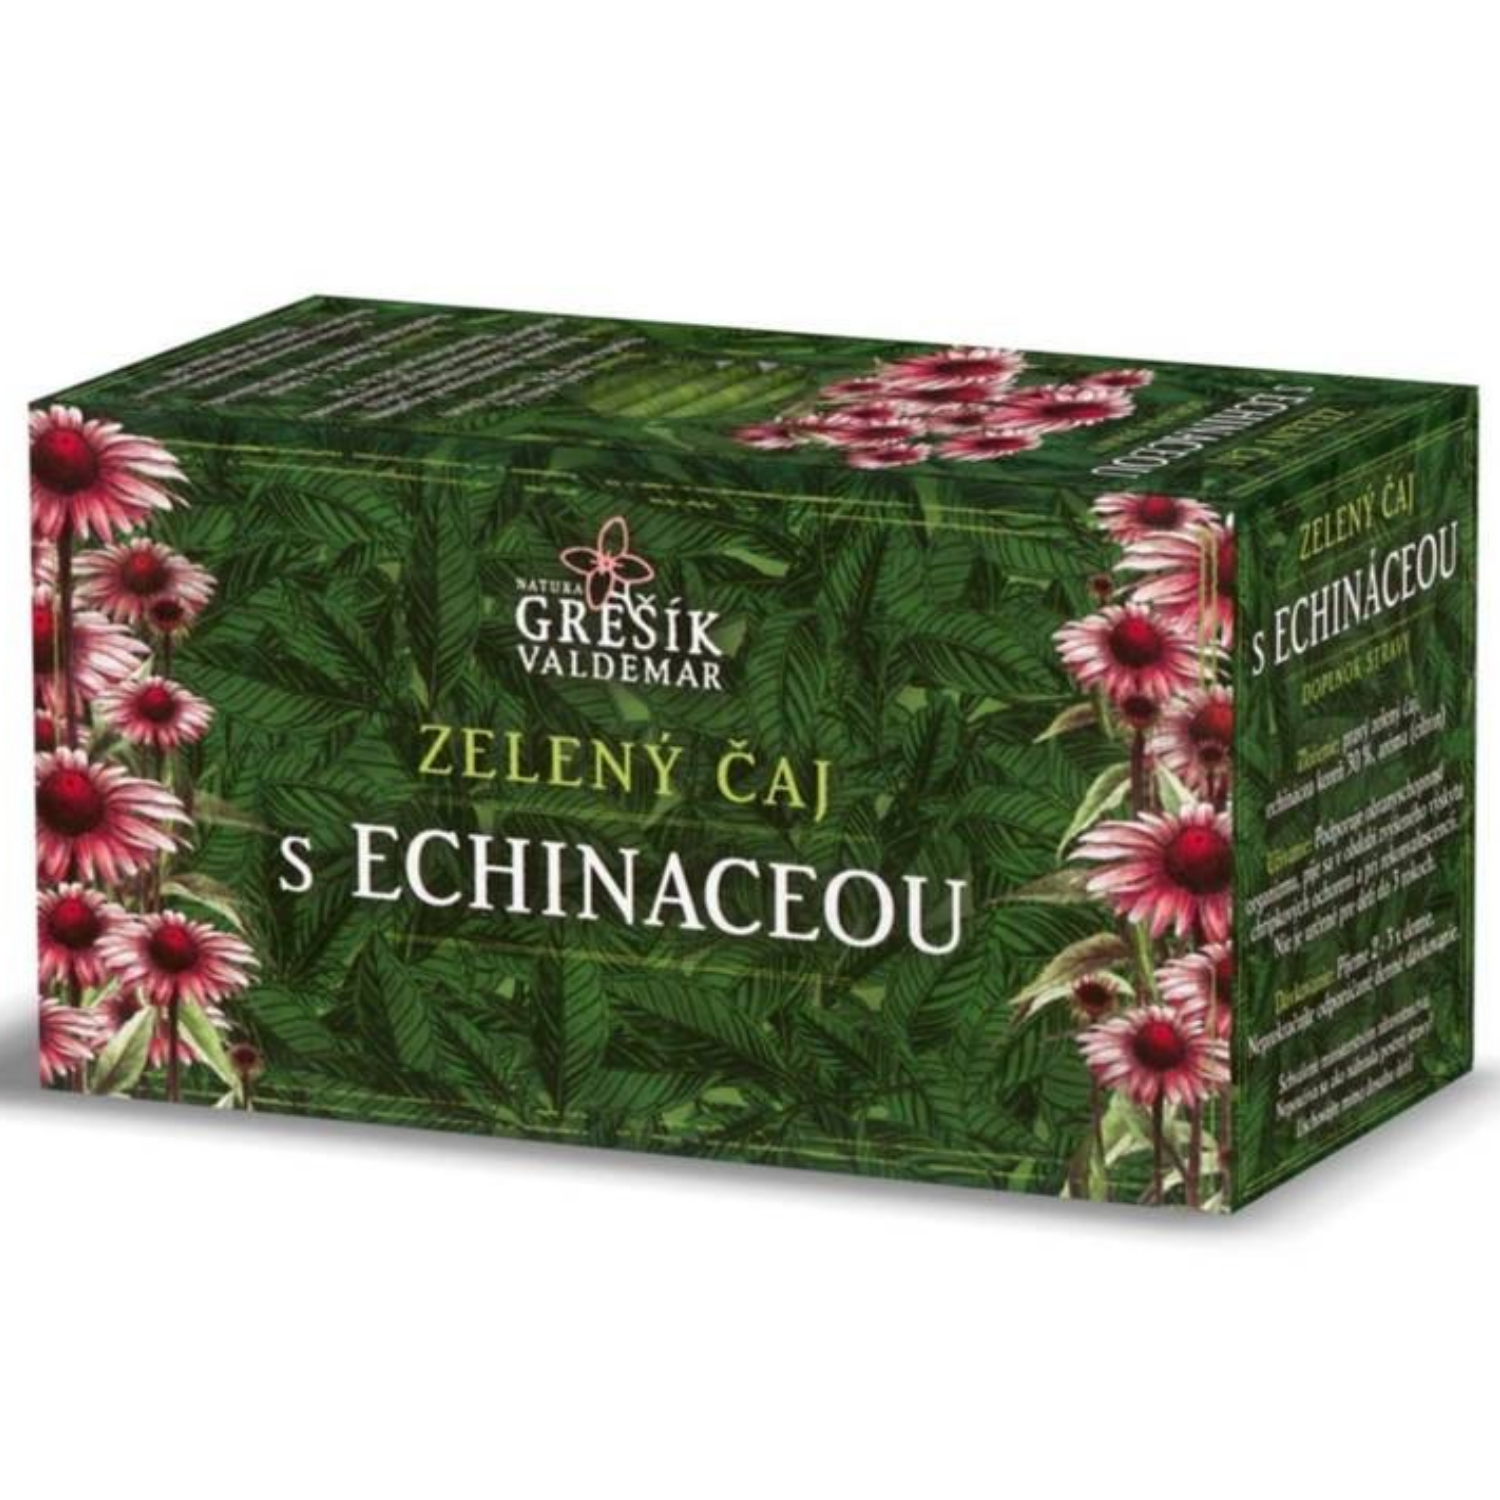 Zelený čaj s echinaceou (30g)